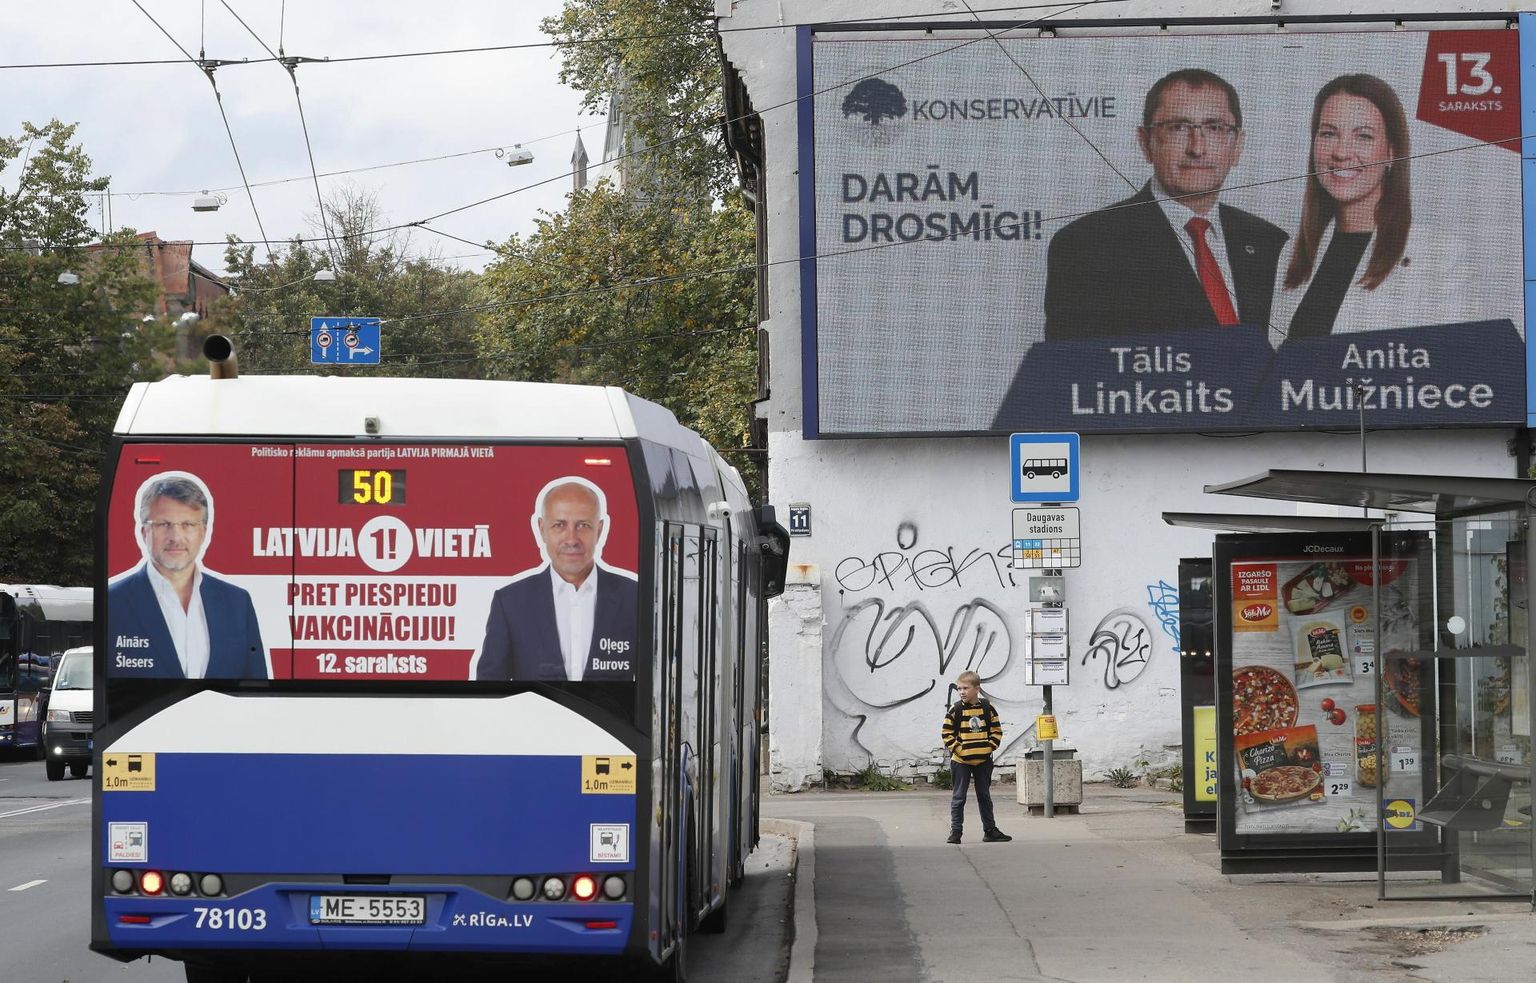 Erakonna Läti Esimesel Kohal ja Konservatiivide valimisplakatid Riias. 